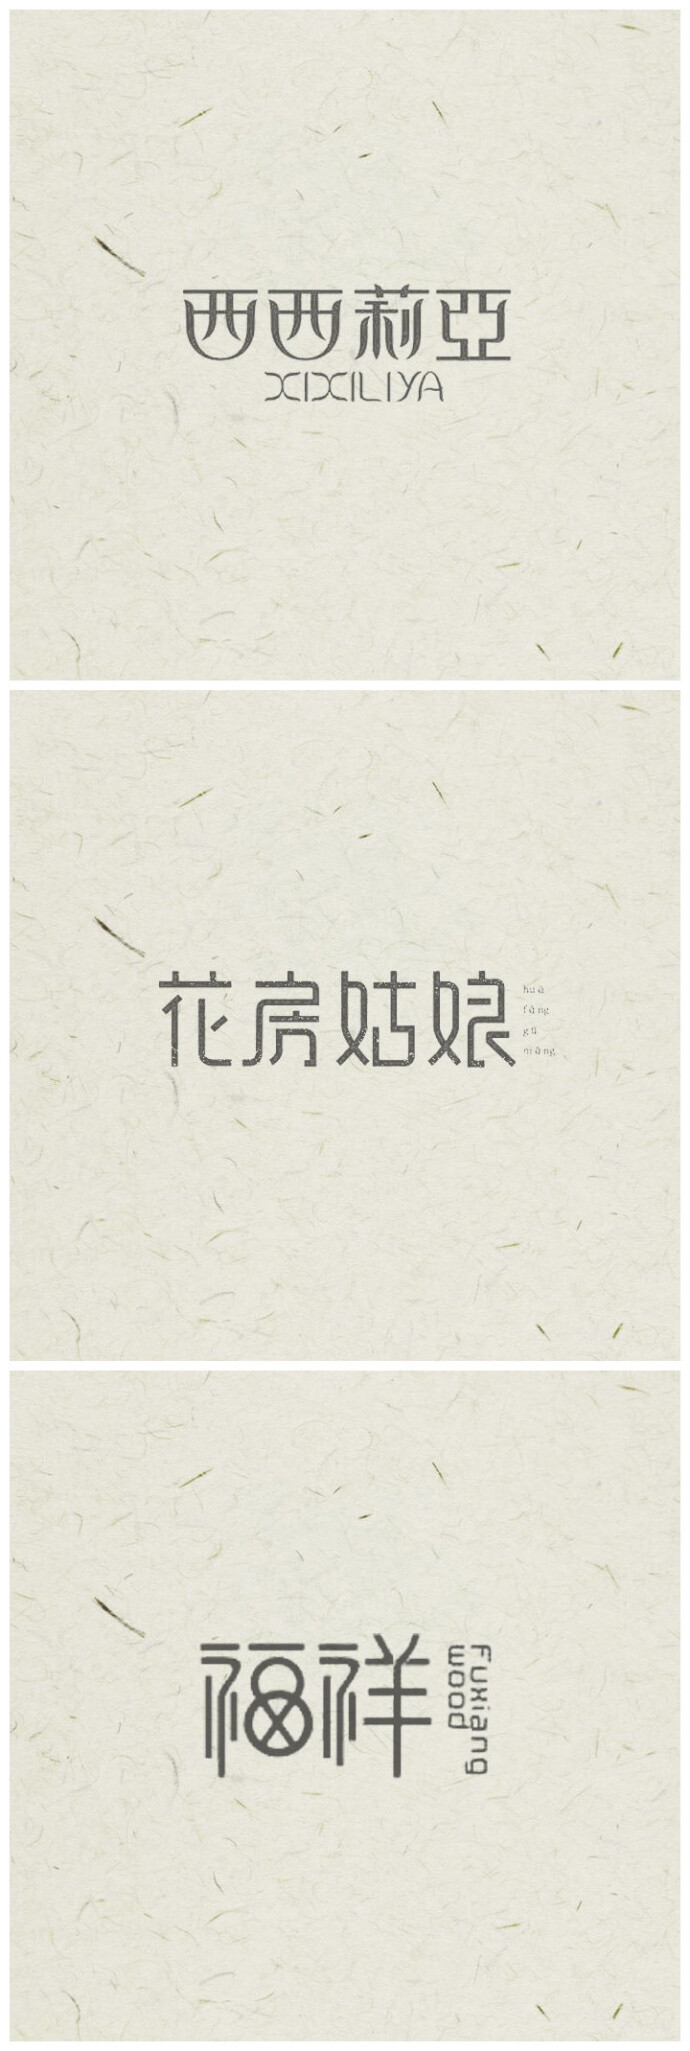 中国风logo设计,感受中国汉字之美 #标志分享